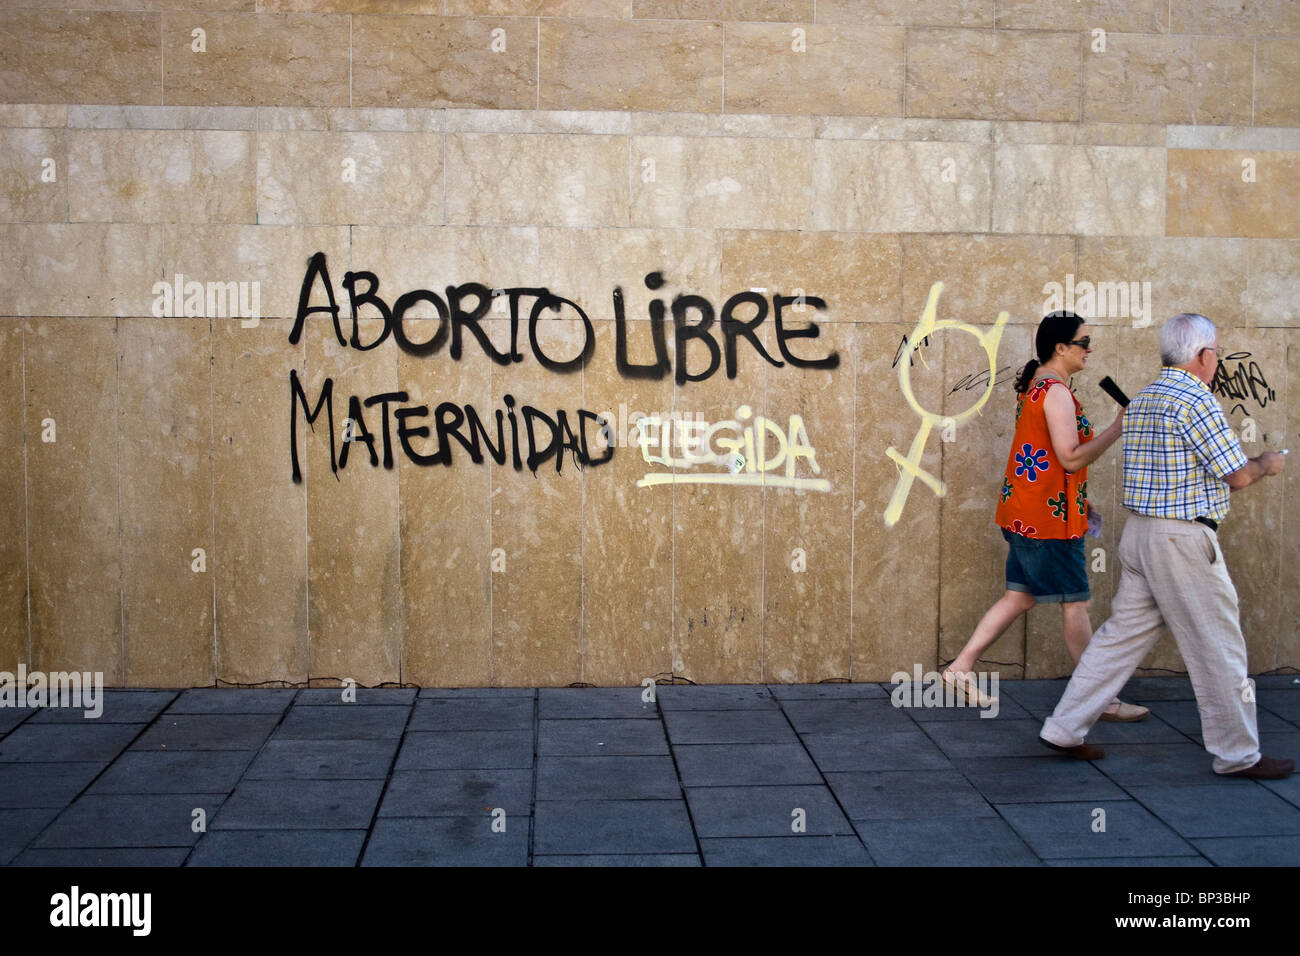 Les graffitis, l'avortement libre, Choix de la maternité, Grenade, Andalousie, Espagne Banque D'Images